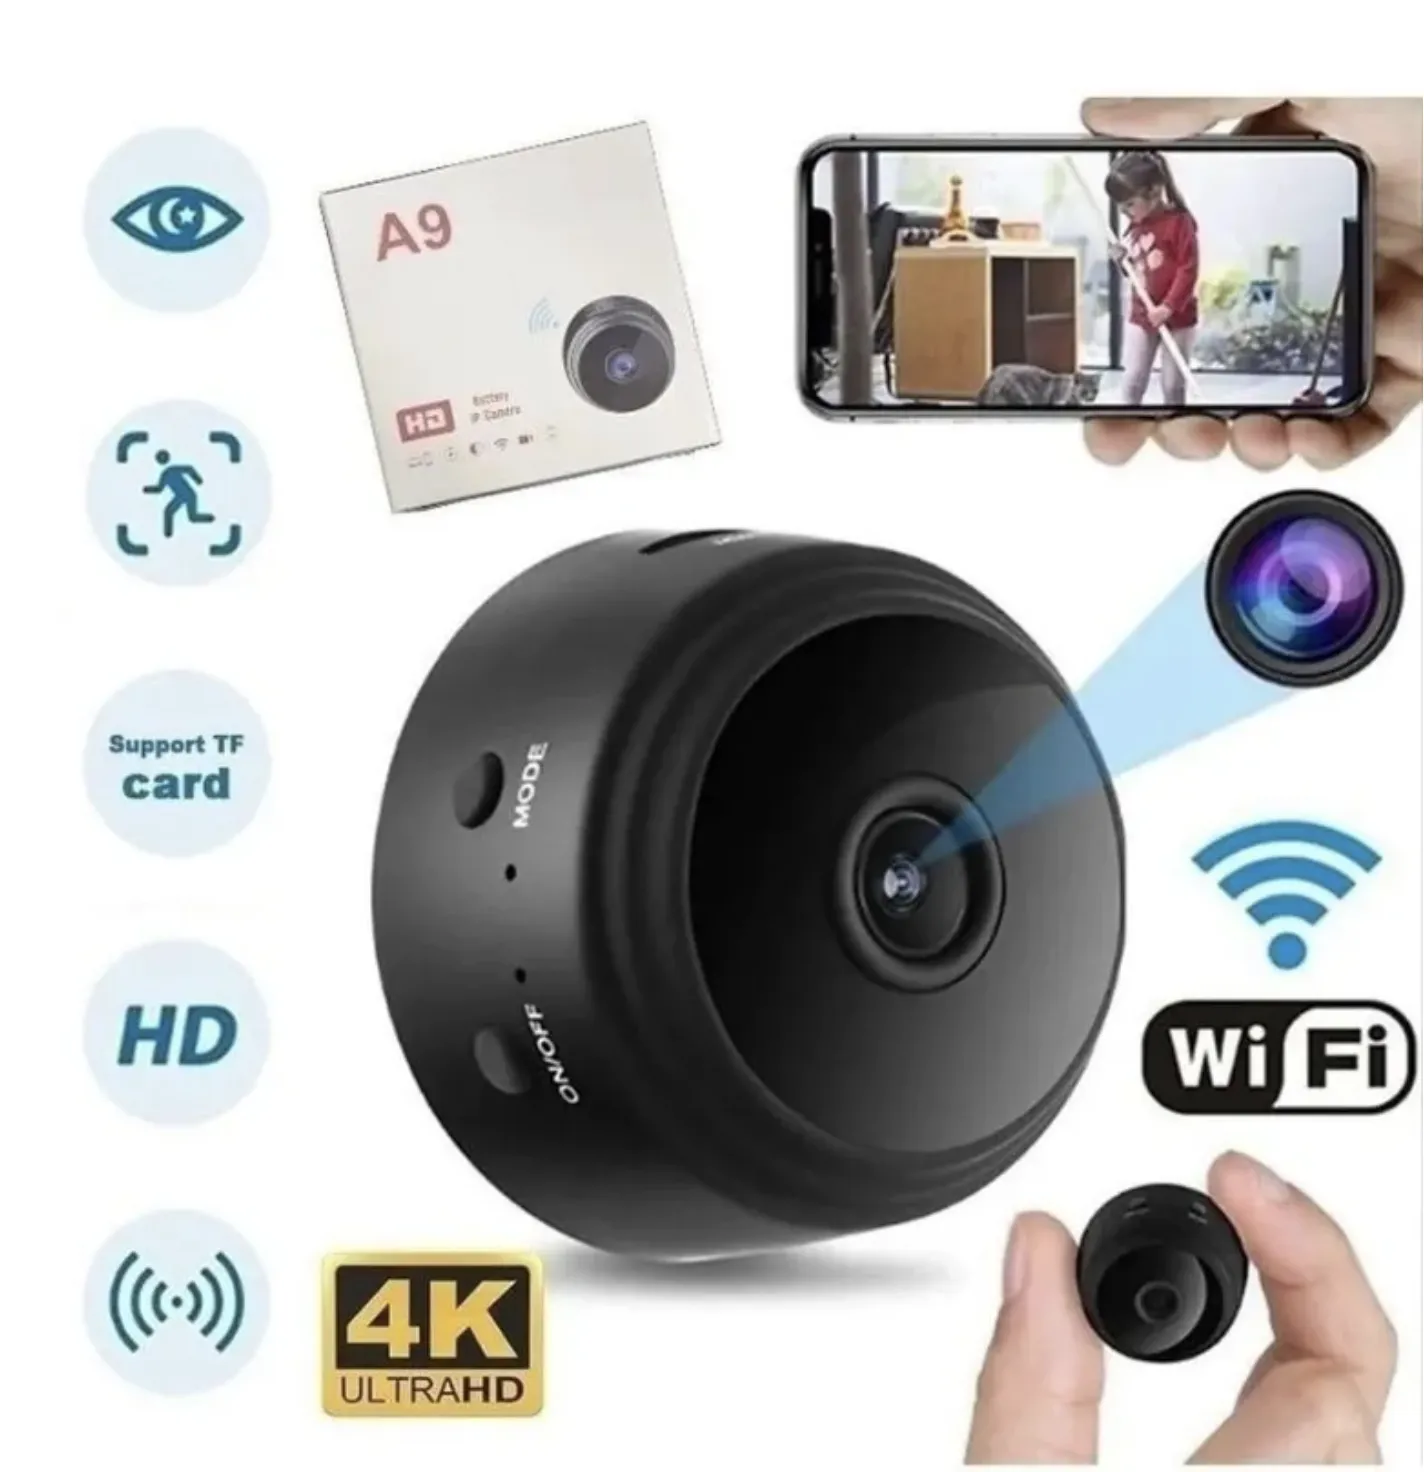 Беспроводная мини камера.Wi Fi smart camera для удаленного наблюдения дома через телефон. с датчиком движения, магнит крепление.#5